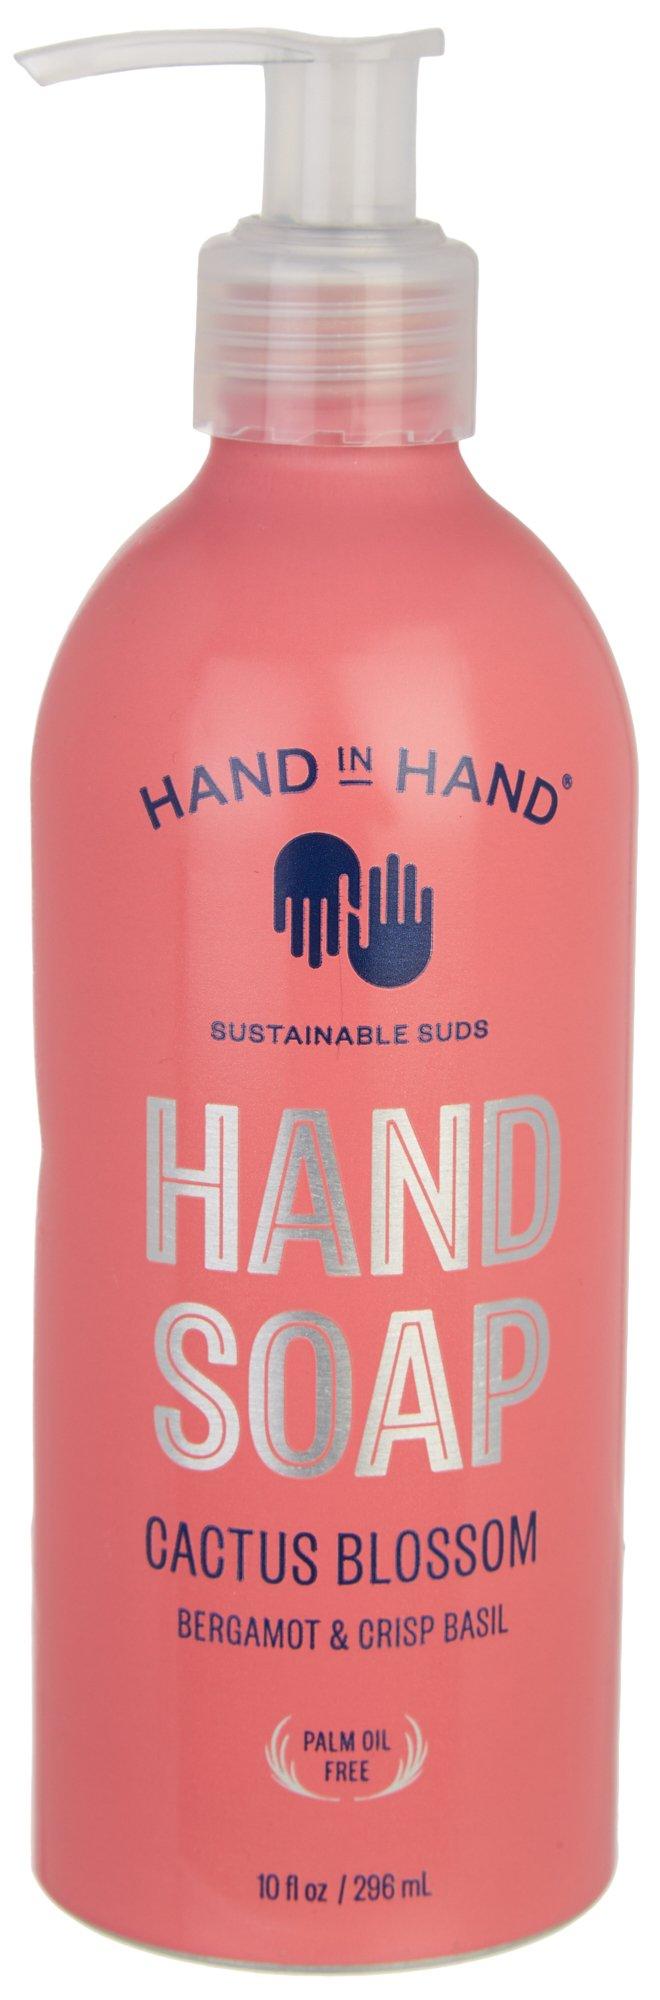 Hand In Hand Cactus Blossum Hand Soap 10